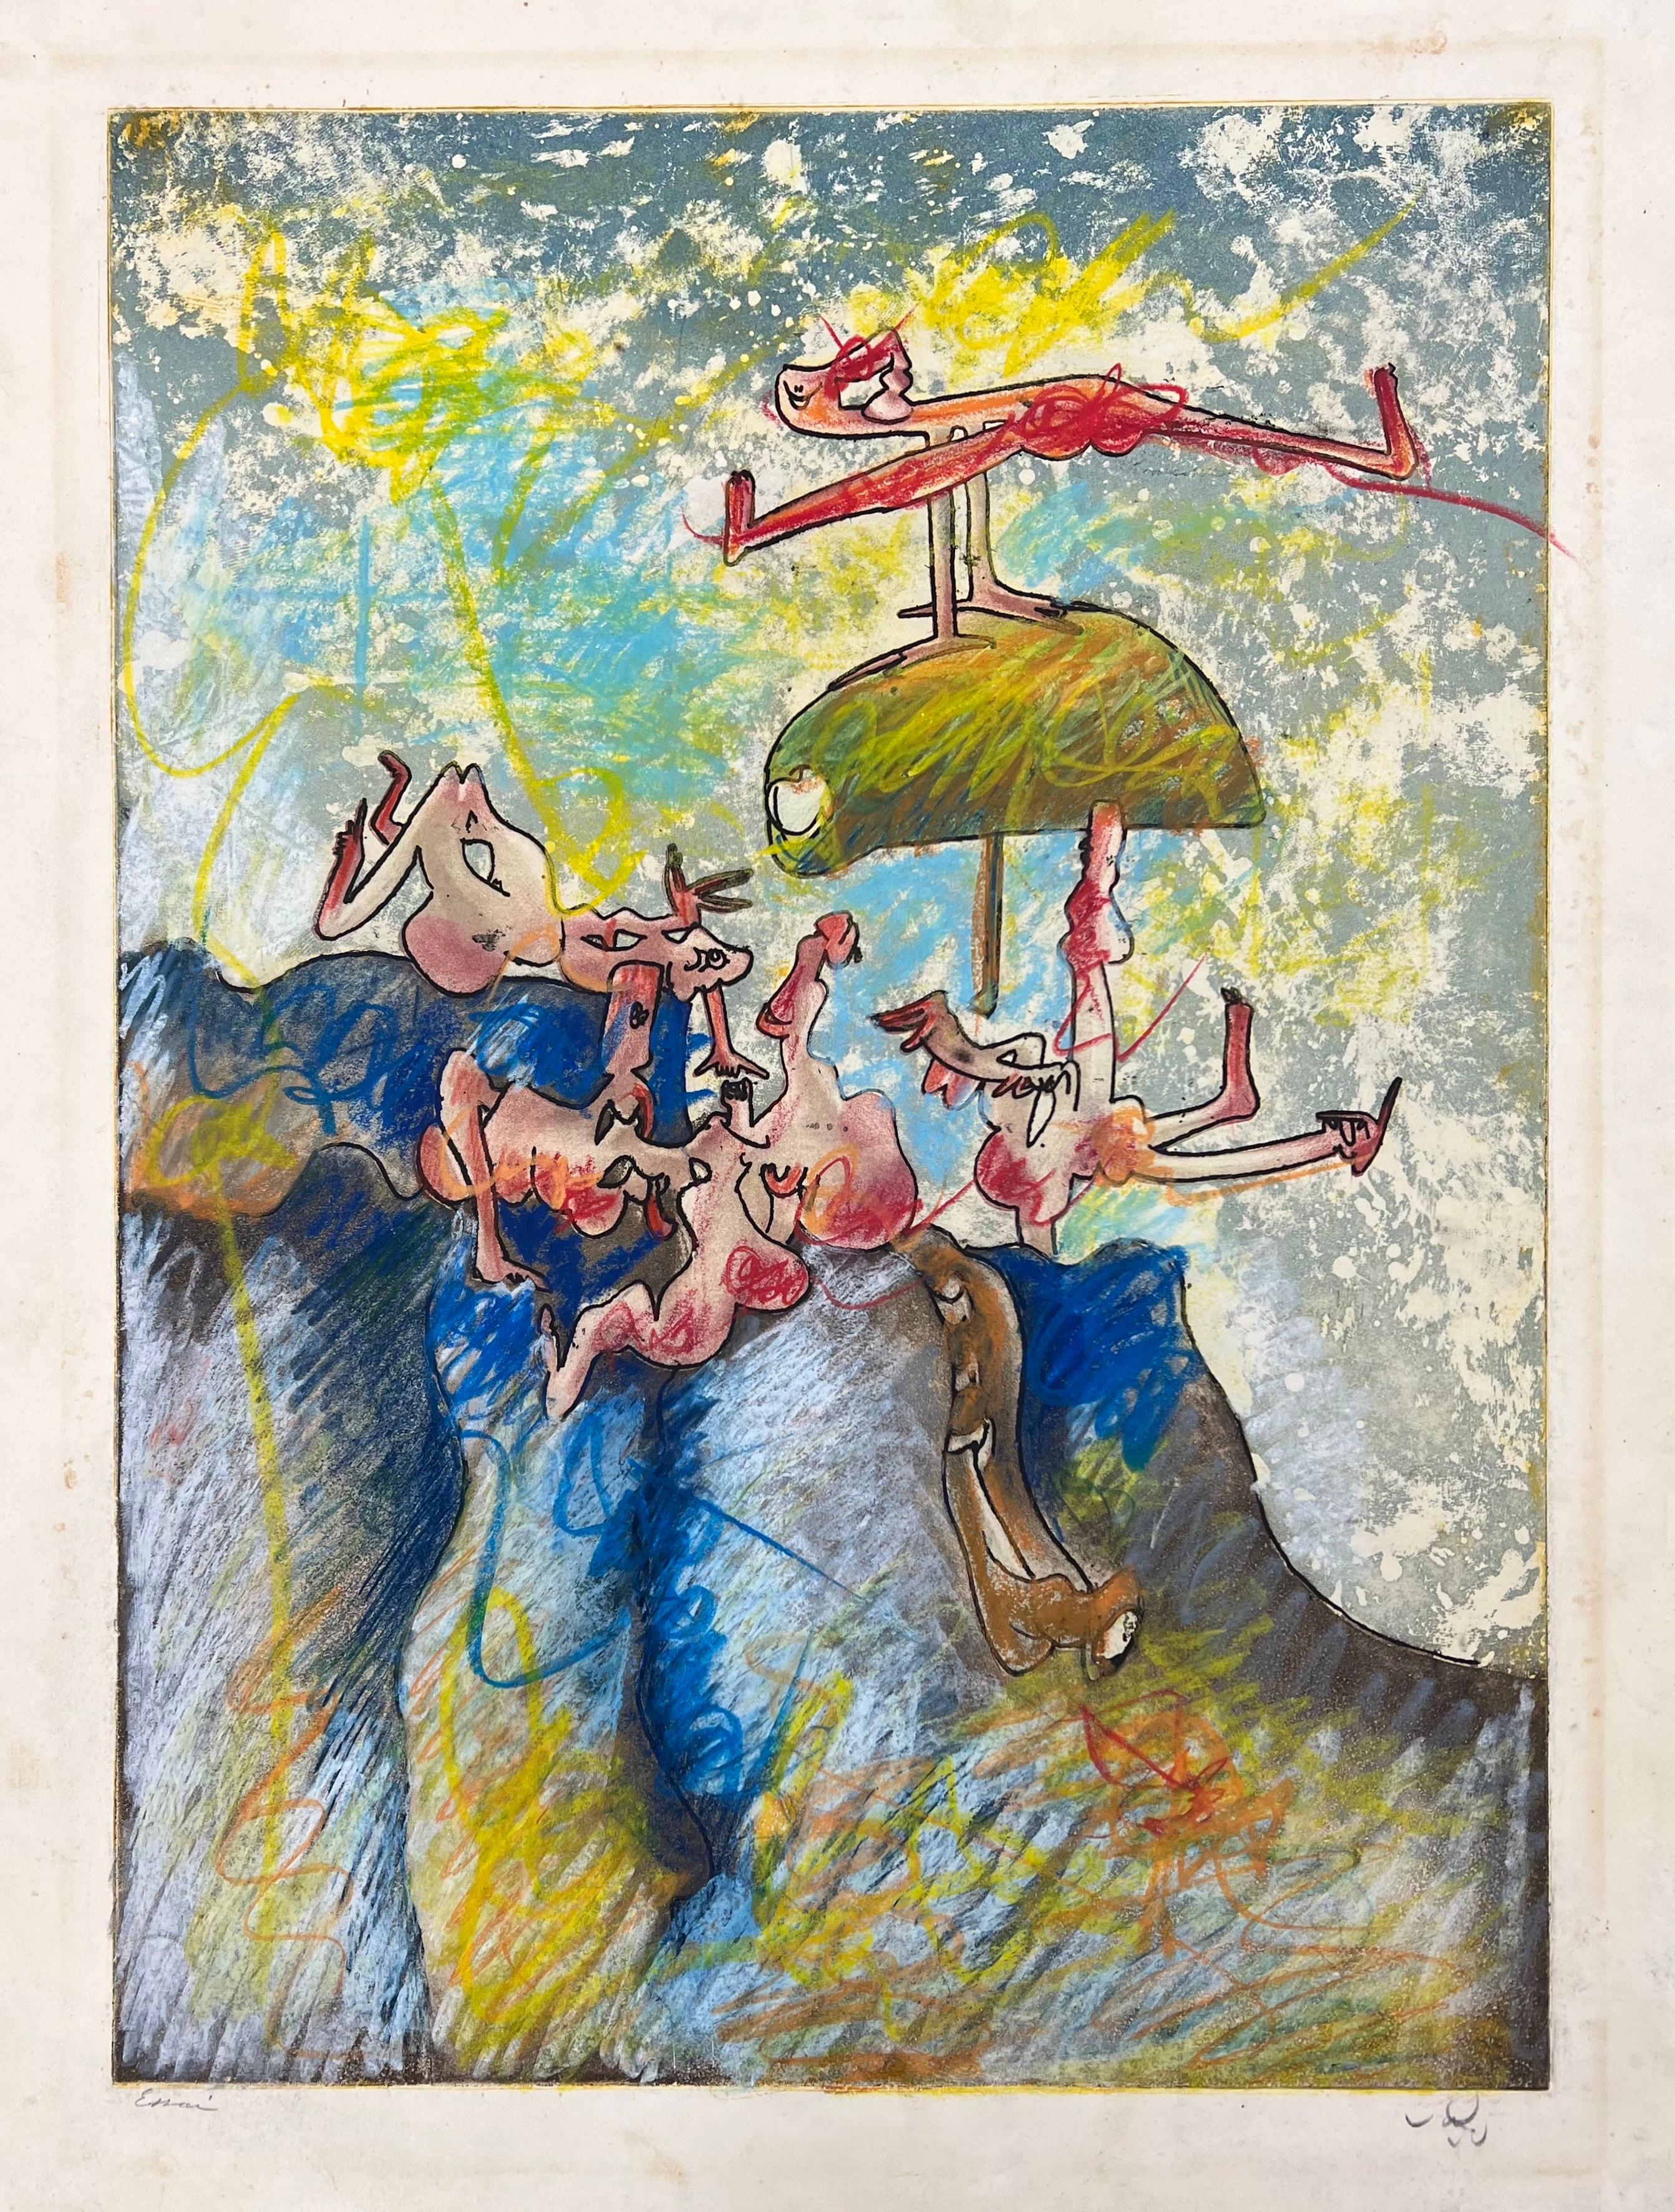 Abstract Print Roberto Sebastián Matta - Roberto Matta, "Feuilles ouvertes", 1971, eau-forte et aquatinte, signée